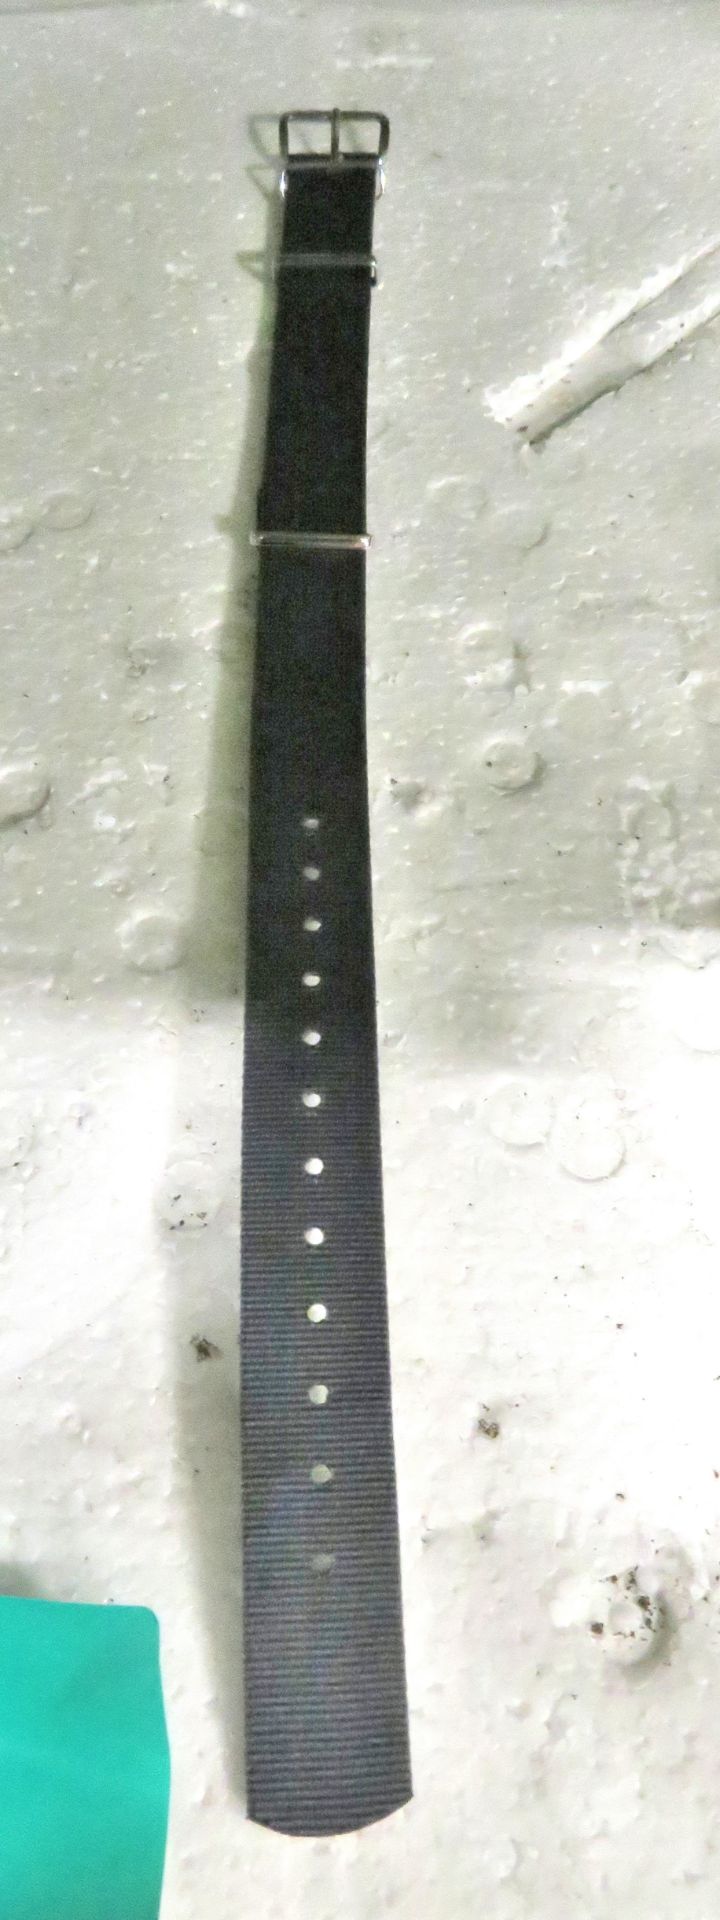 18x Watch Wrist Straps - grey - Image 2 of 2